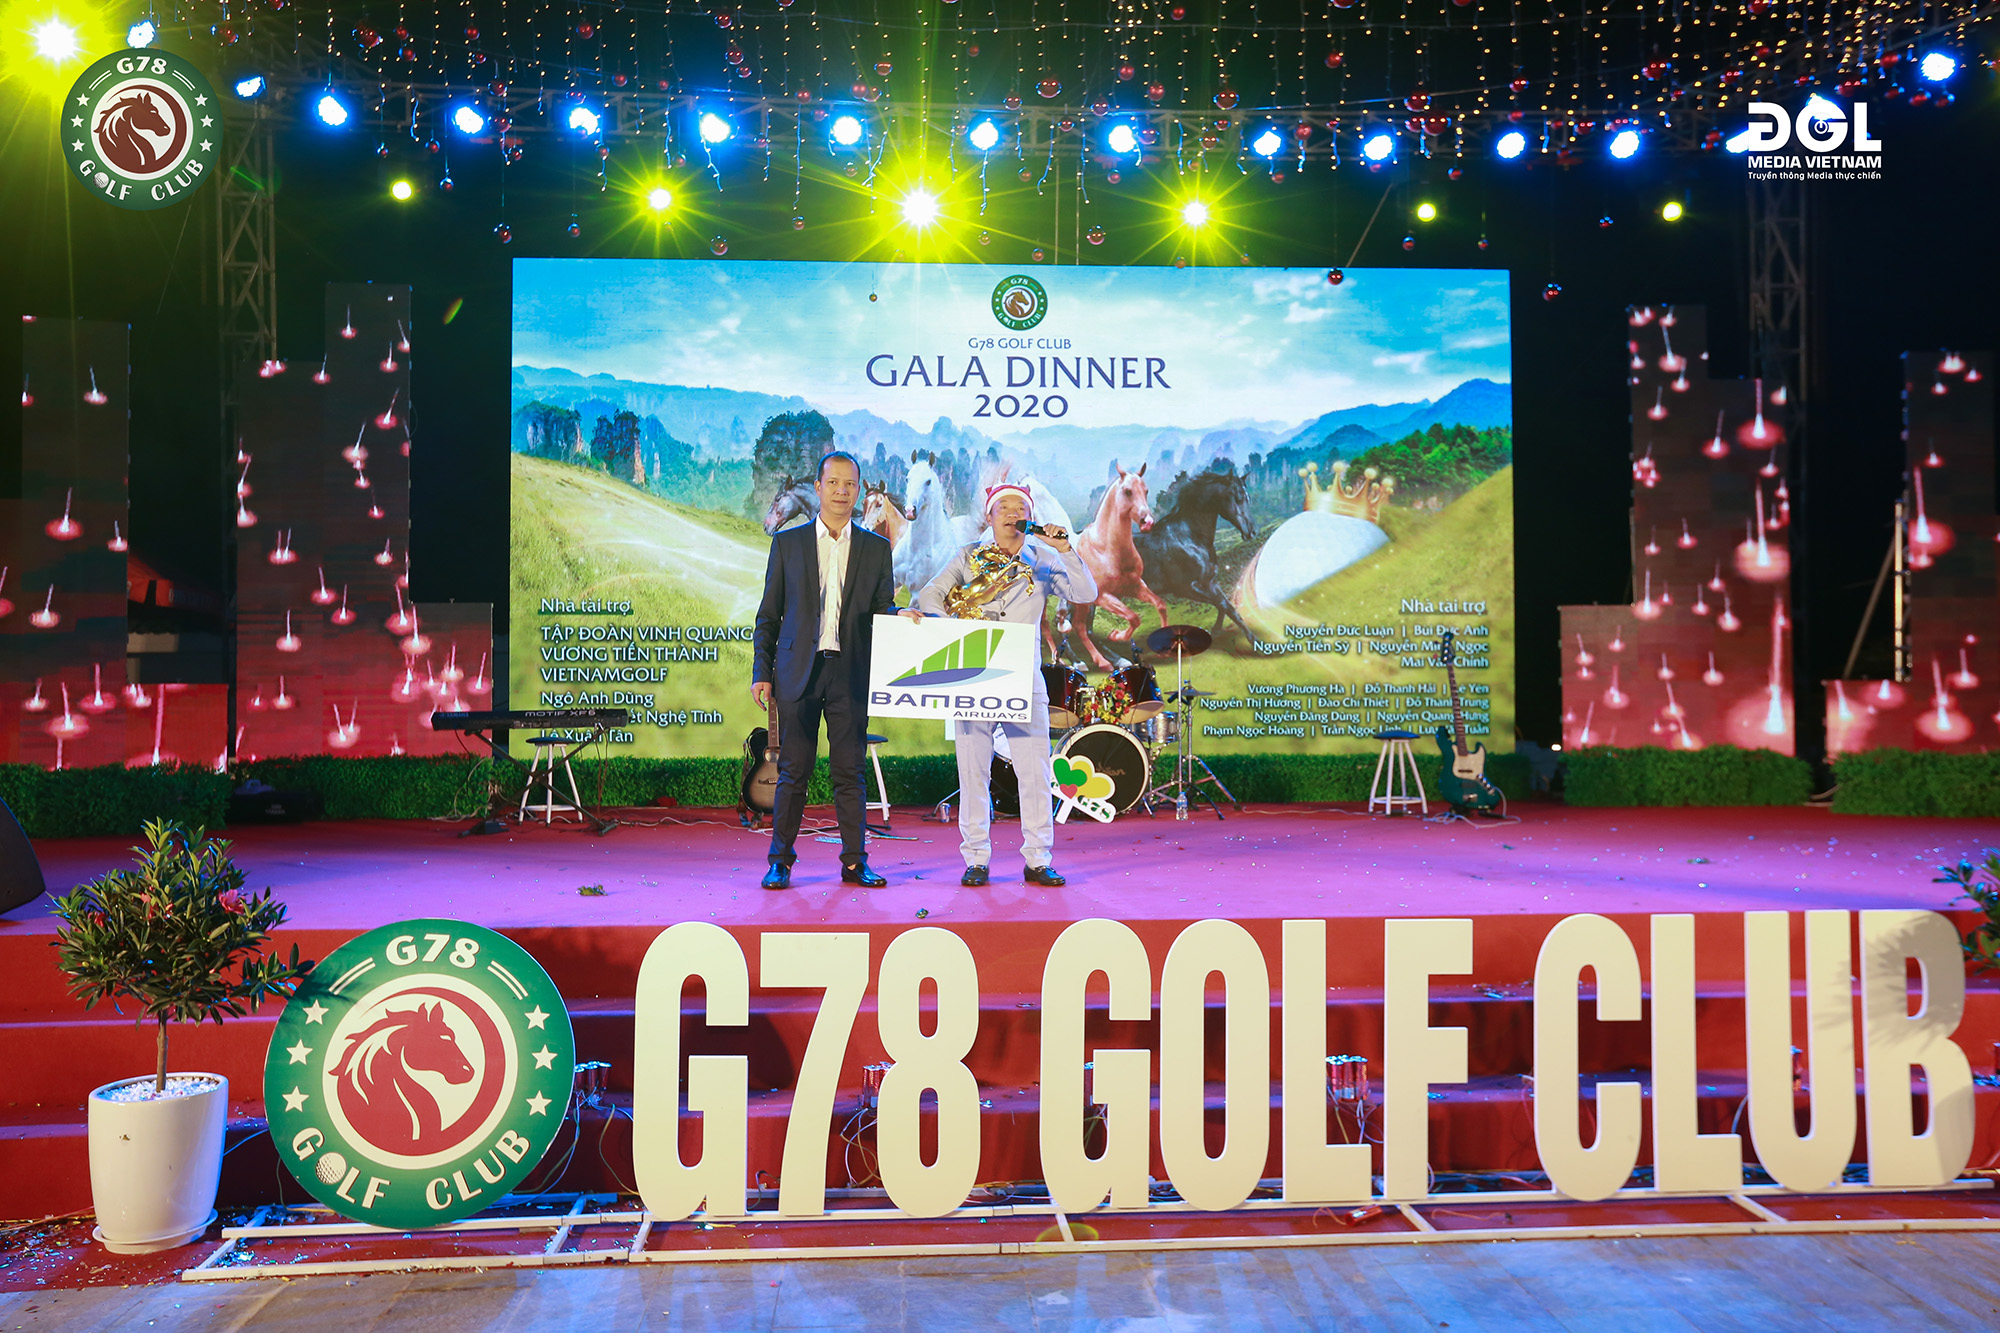 GALA DINNER 2020 - G78 GOLF CLUB